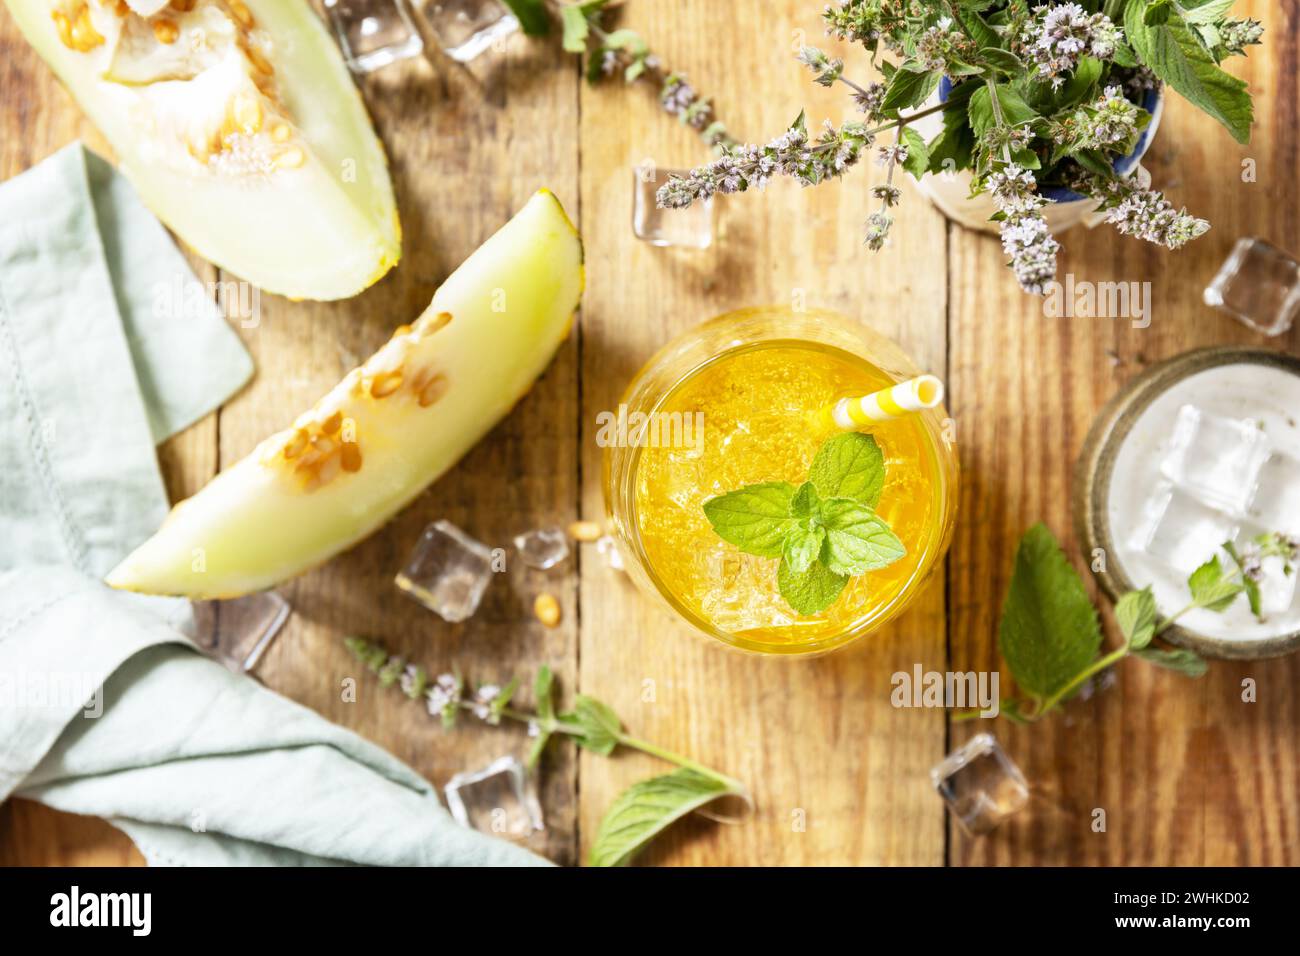 Frische, erfrischende, fruchtige Sommergetränke, saisonale Getränke. Melonenlimonade in Gläsern mit Eis und Minze auf einem rustikalen Holztisch. Stockfoto